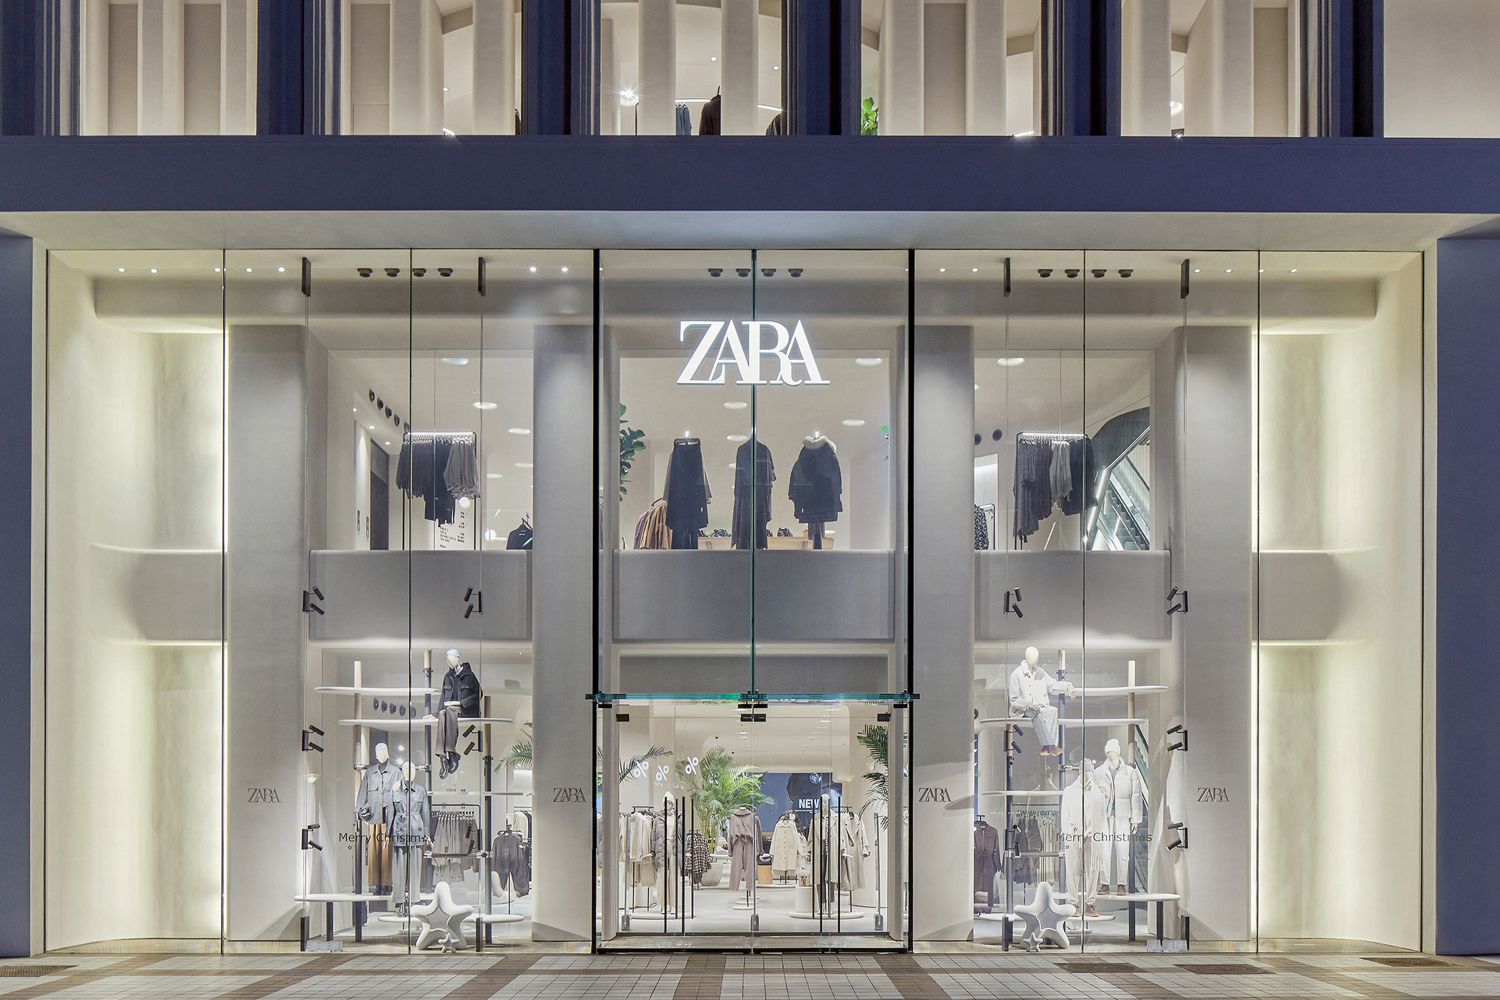 Desmontamos um dos mitos mais estendidos de Zara: a mentira dos símbolos  das etiquetas